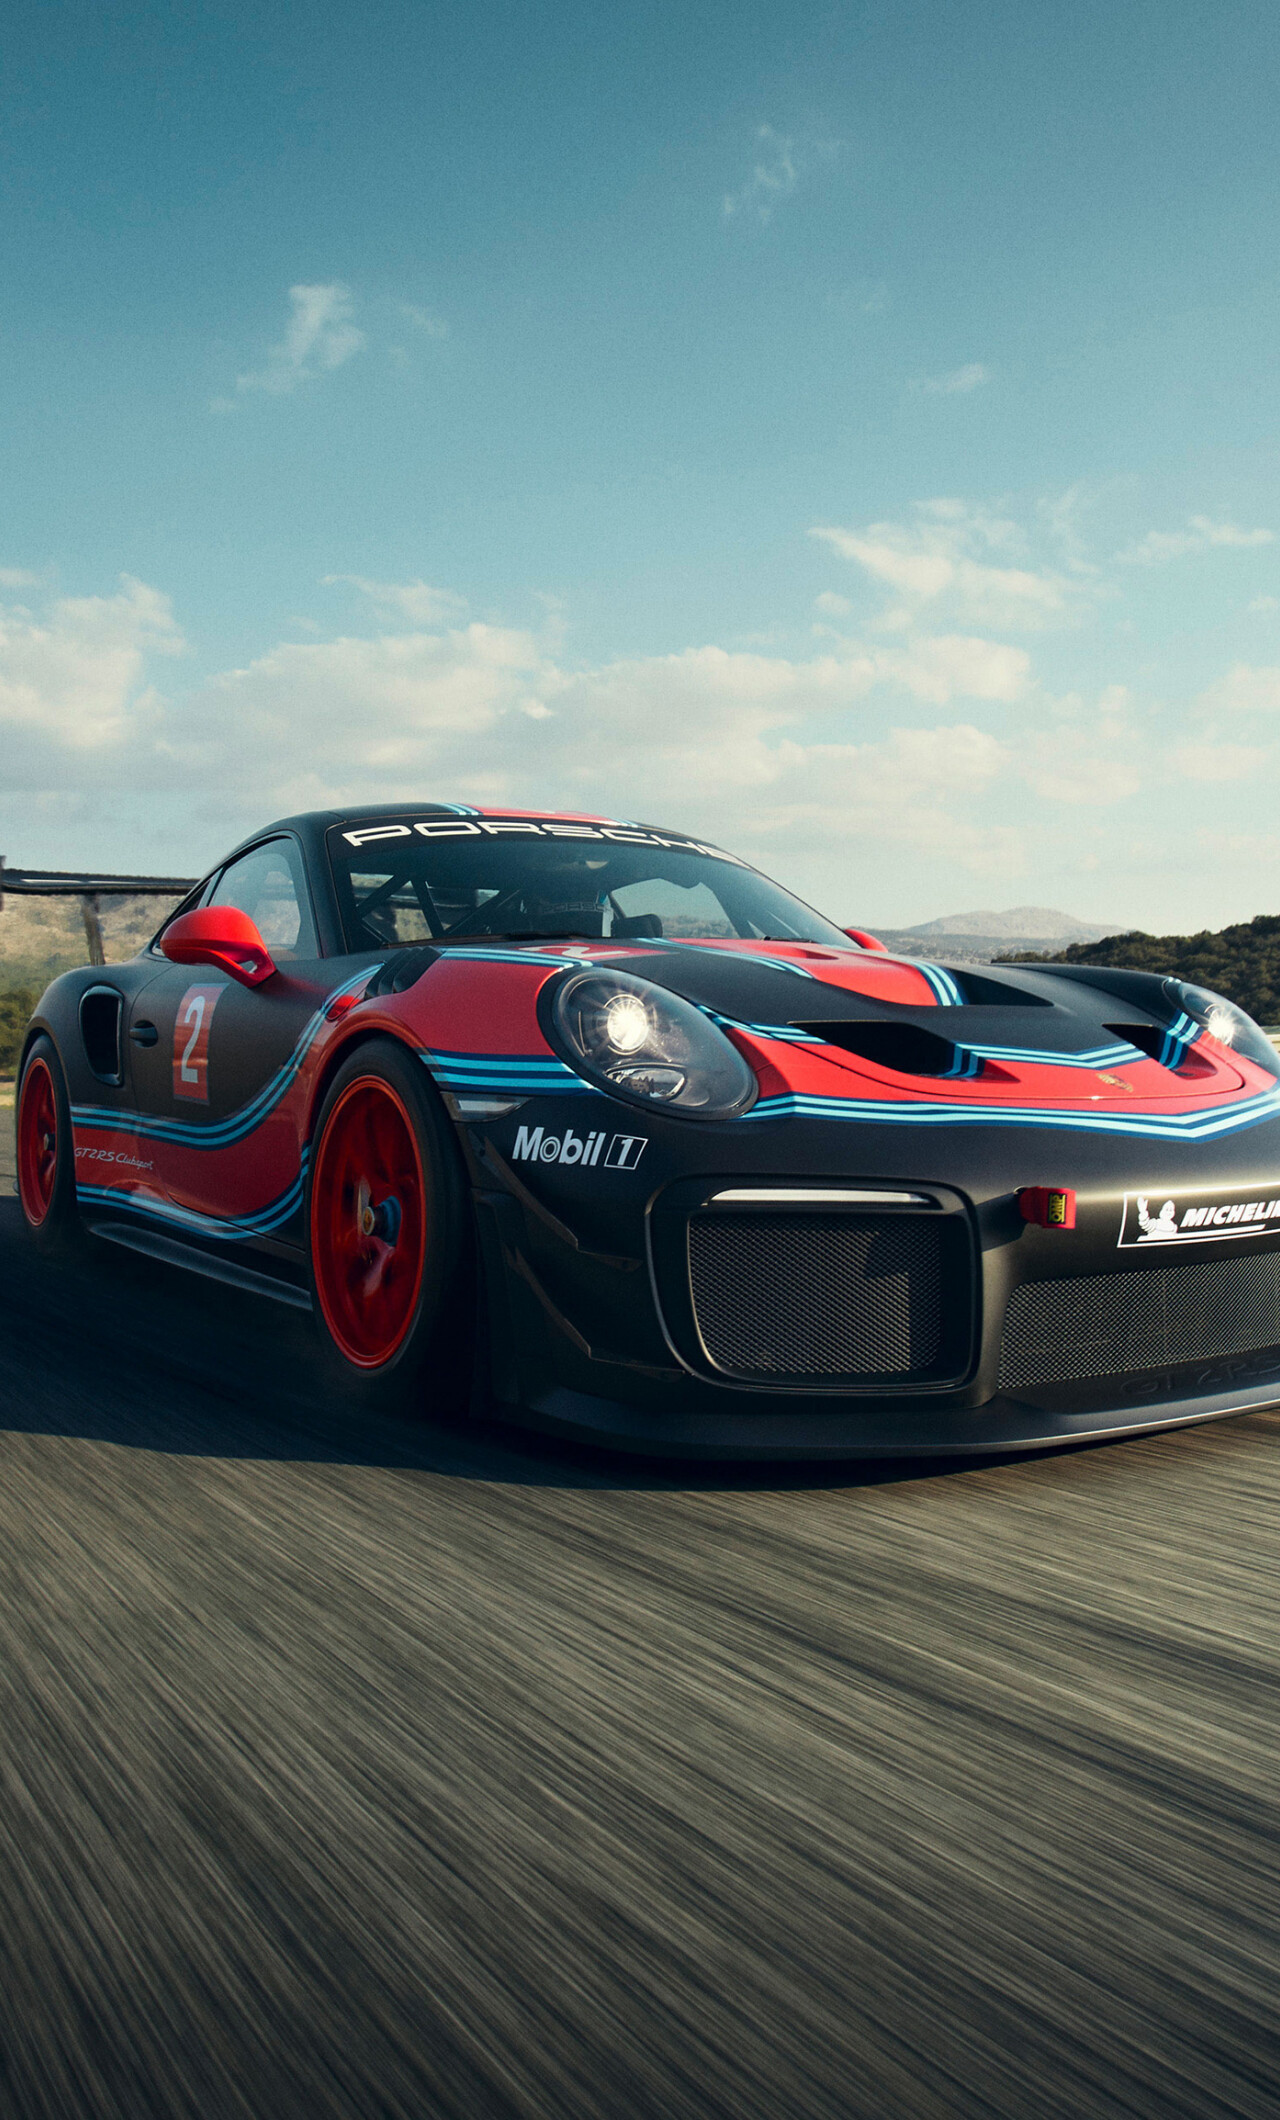 Porsche 911: GT2 RS Clubsport, Sports car, German automotive brand. 1280x2120 HD Wallpaper.